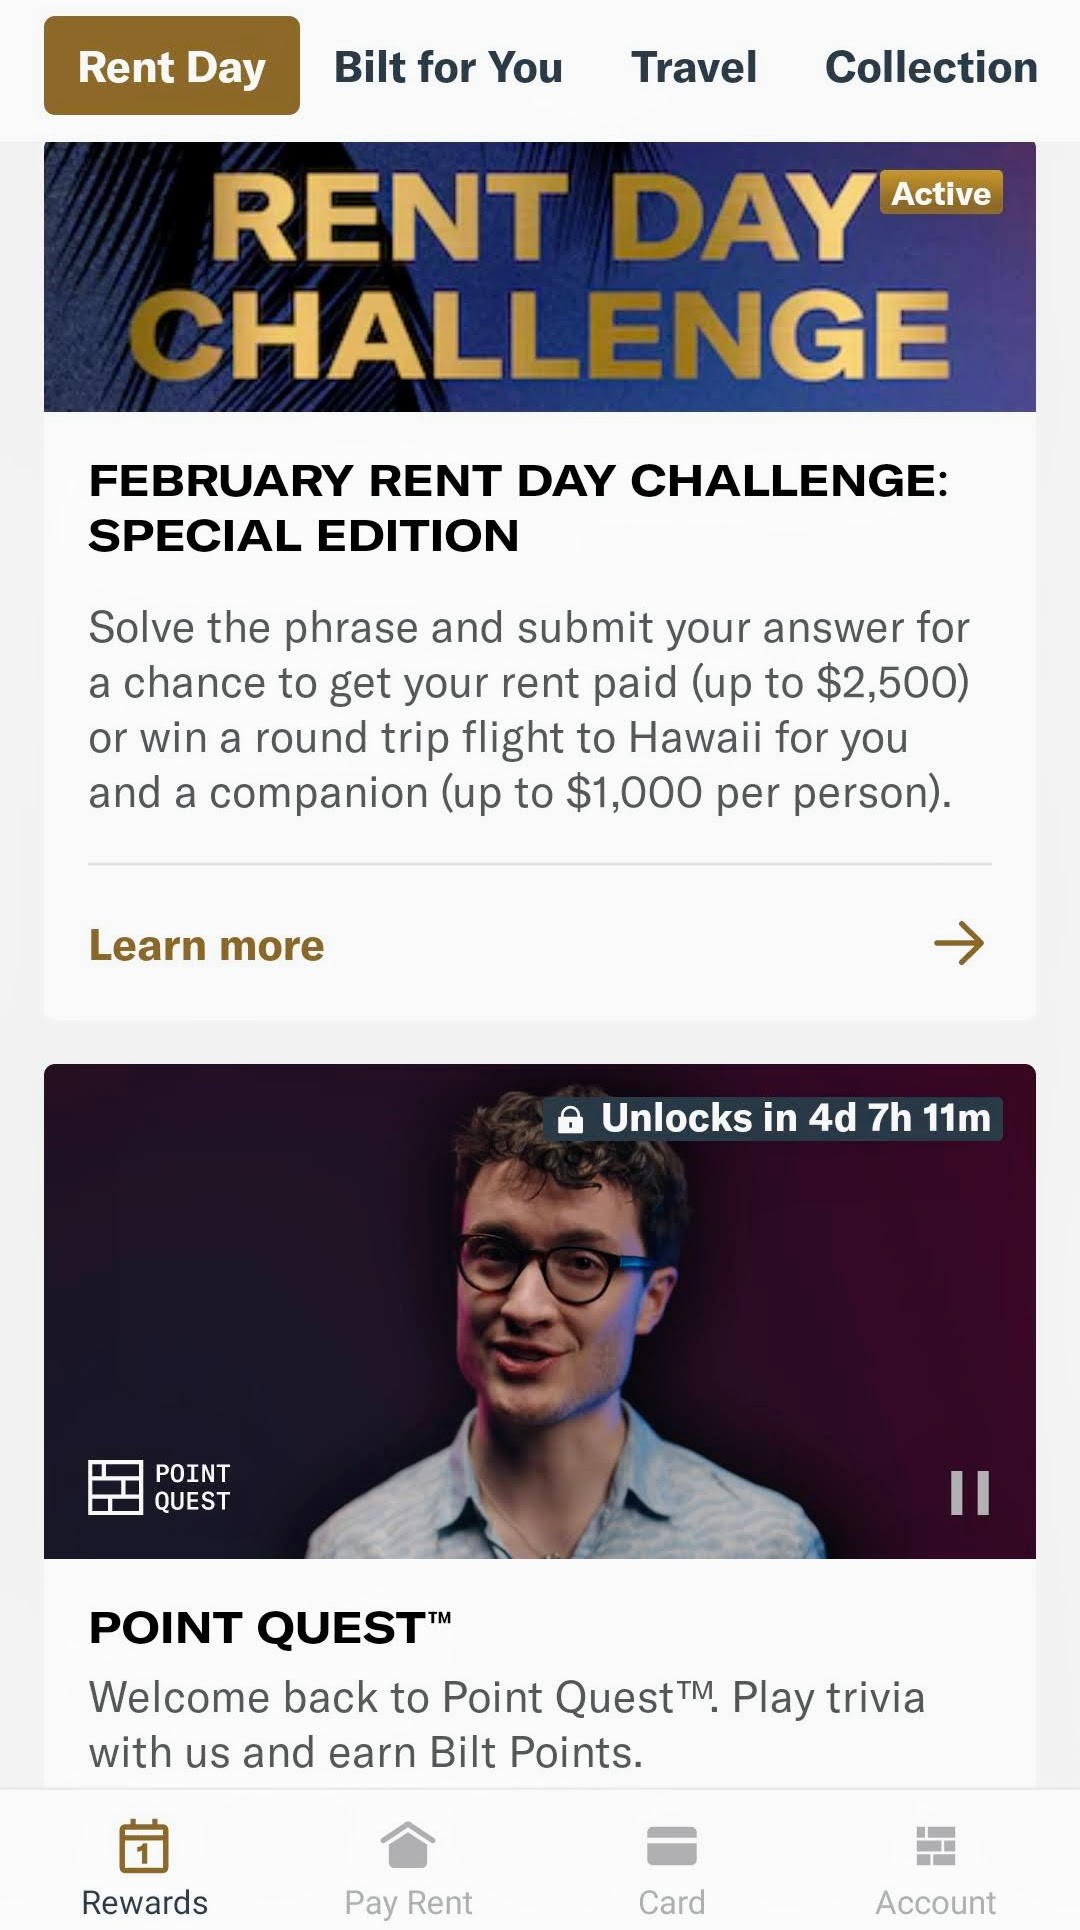 Tangkapan layar dari aplikasi Rent Day Challenge Bilt